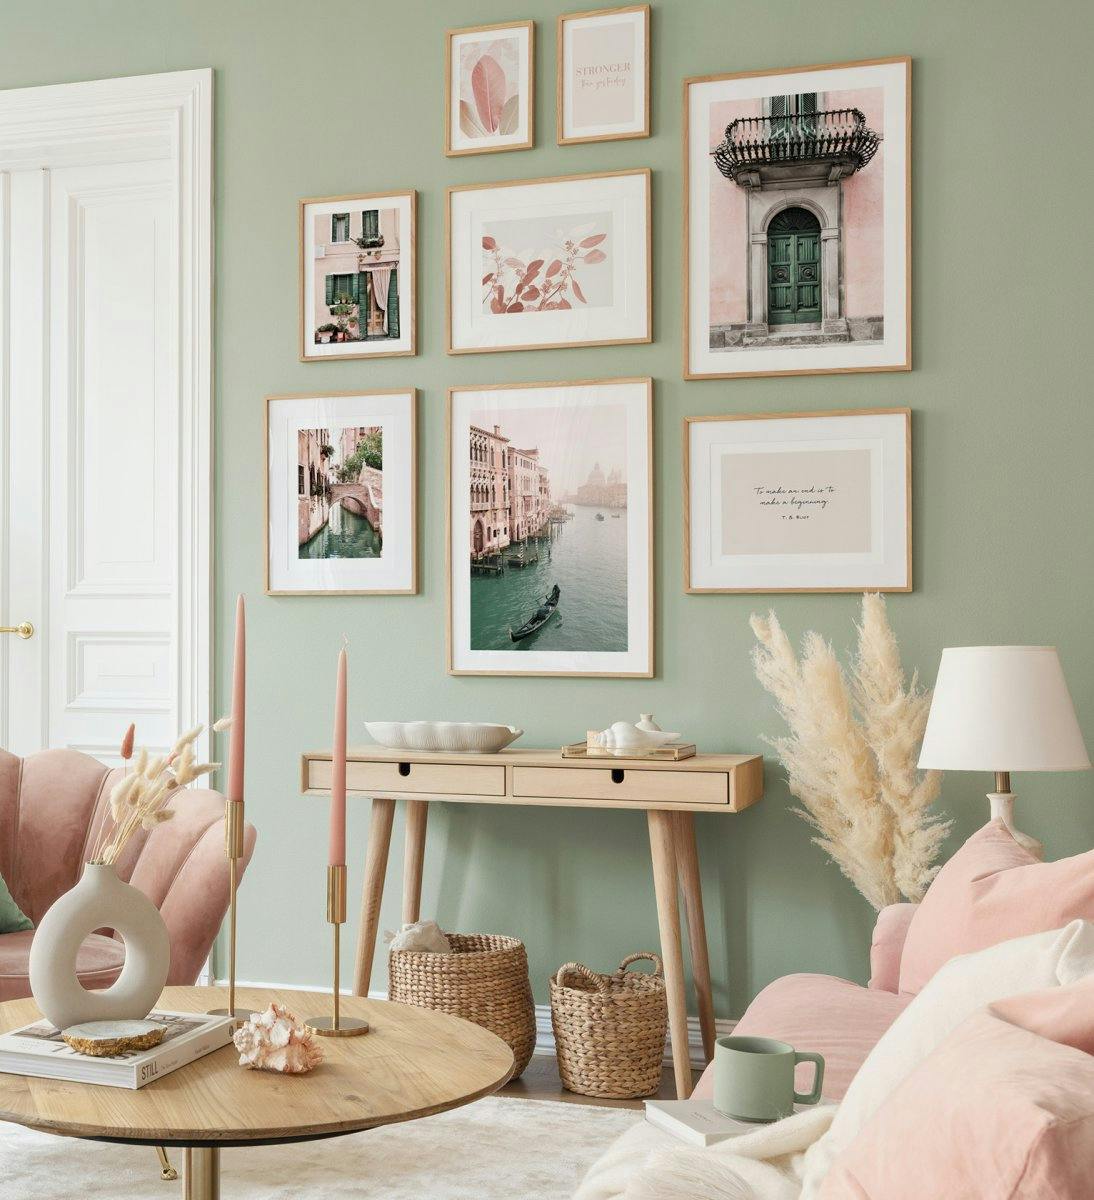 Fotografie in colori pastello creano un'atmosfera giocosa e fresca nel soggiorno